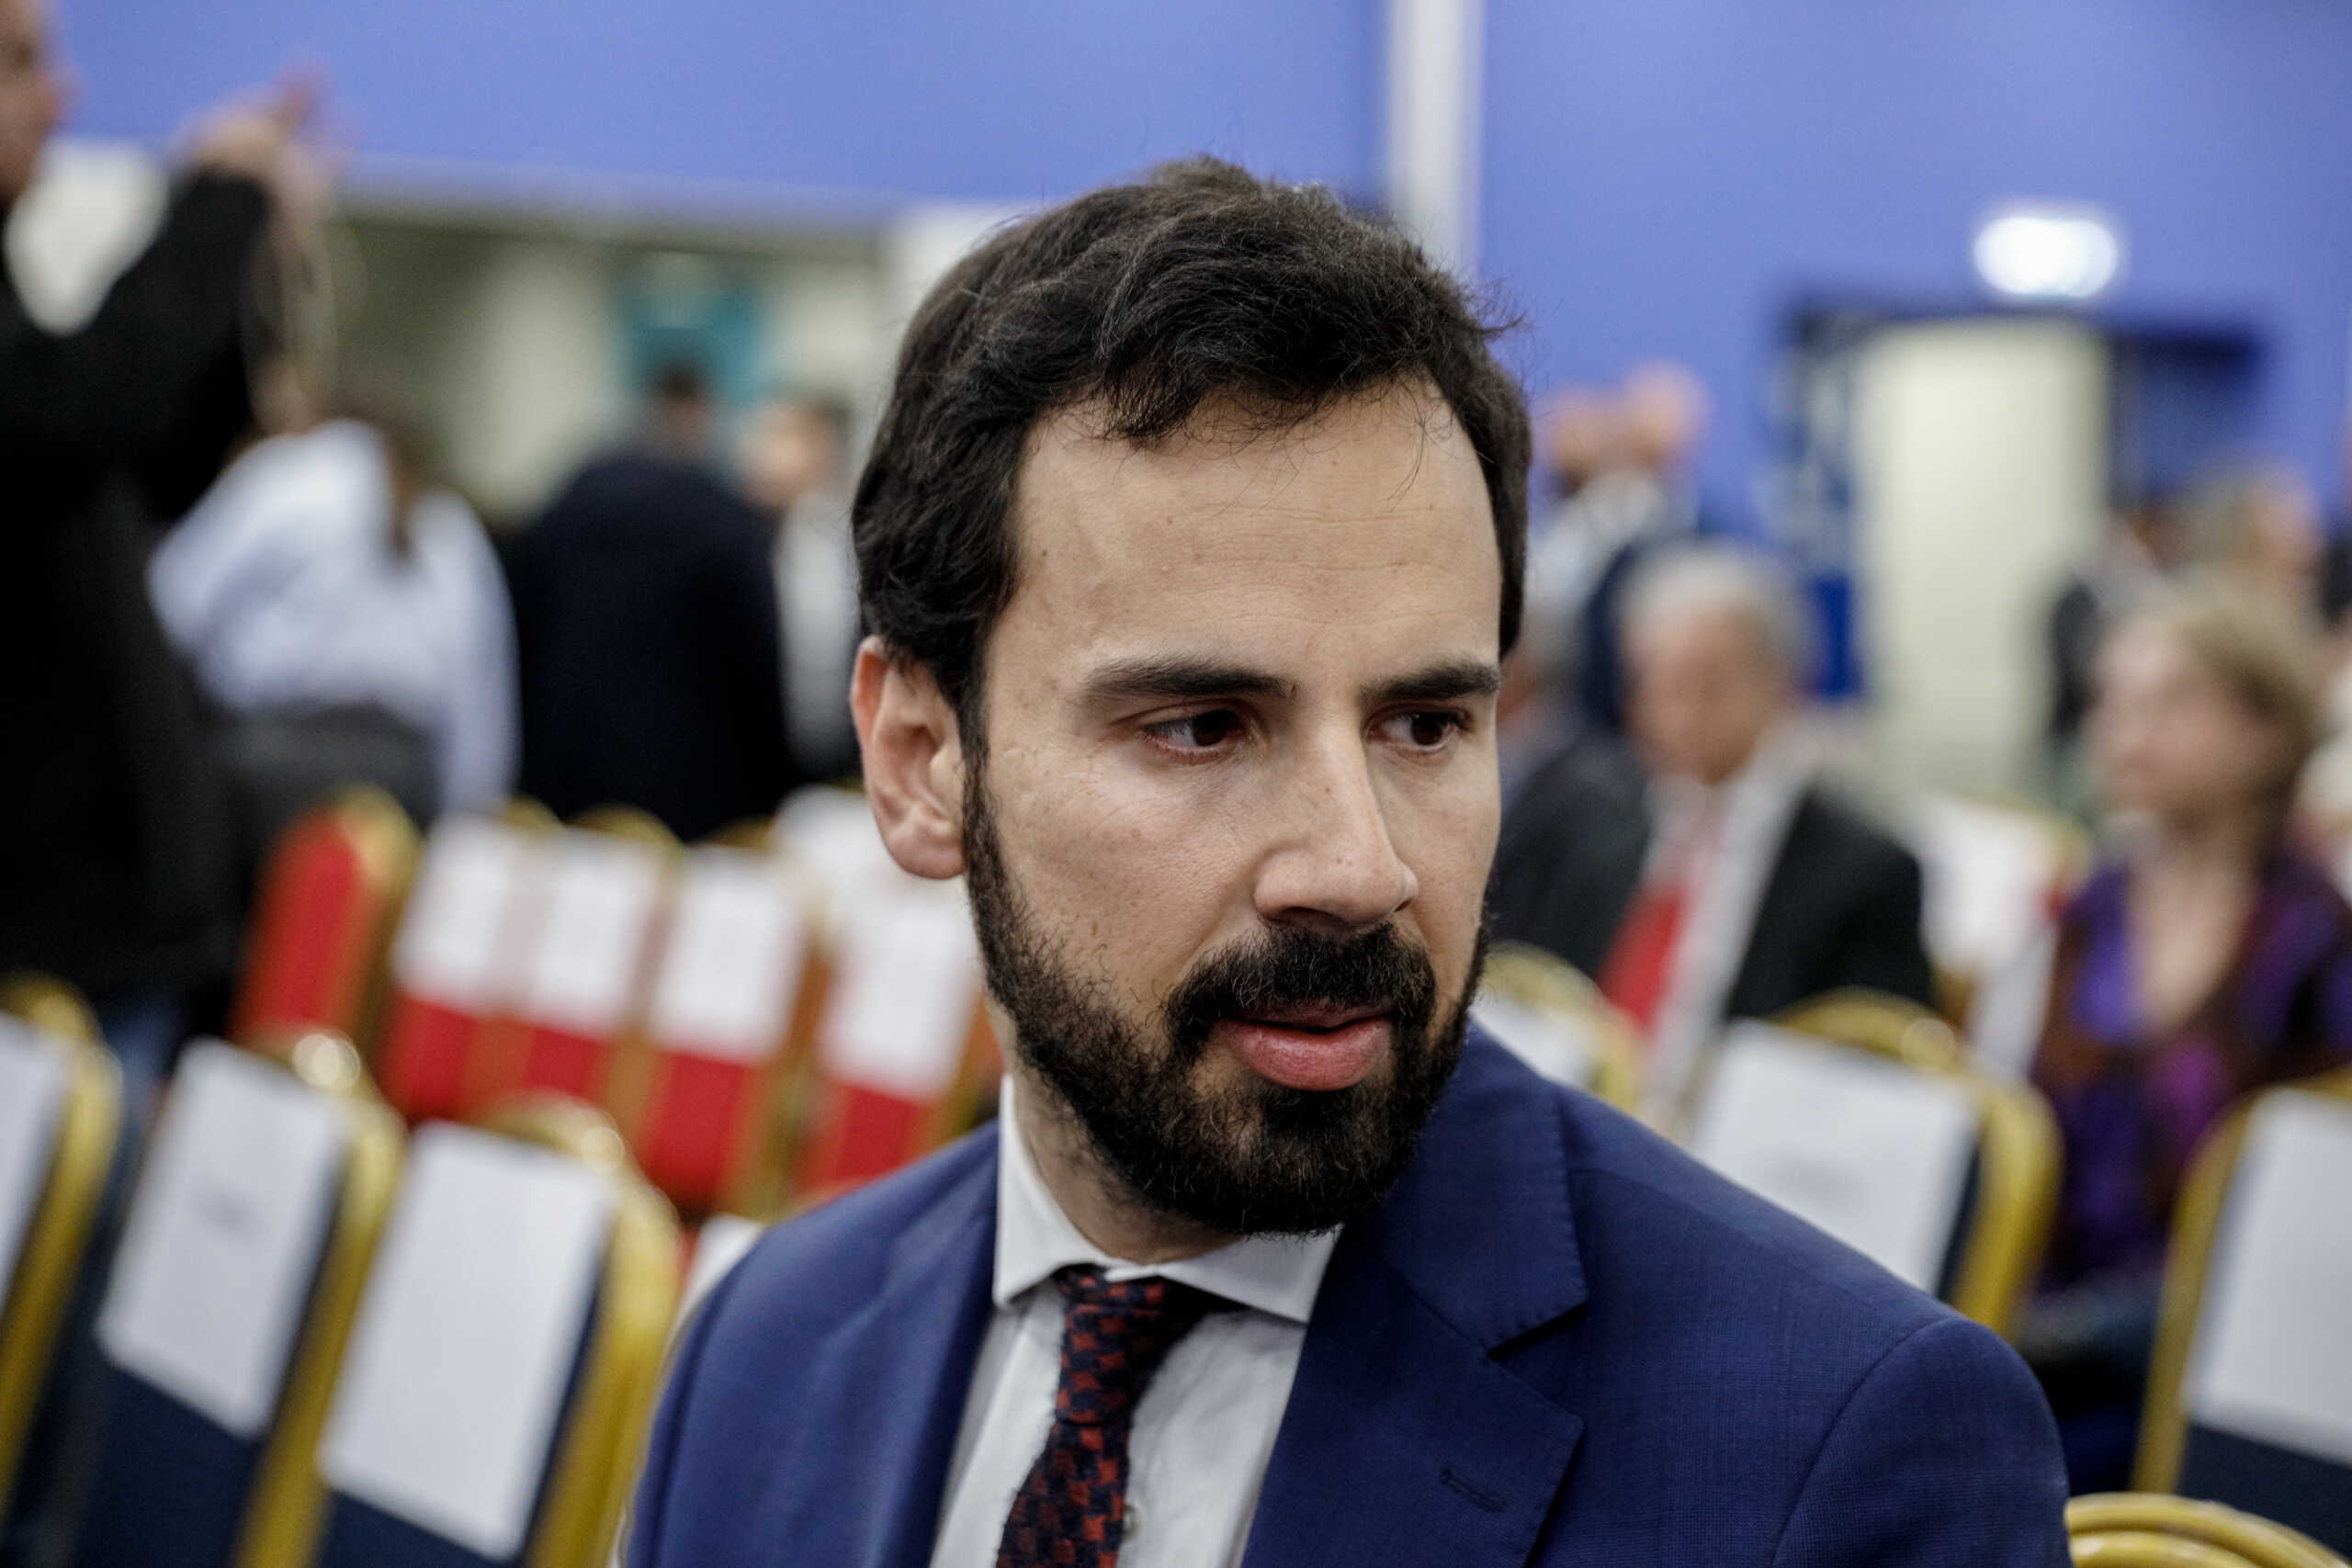 Νίκος Ρωμανός: Το νεοσύστατο think tank παιδείας του ΣΥΡΙΖΑ τι άποψη έχει για την πρόταση του κ. Μαμουλάκη;